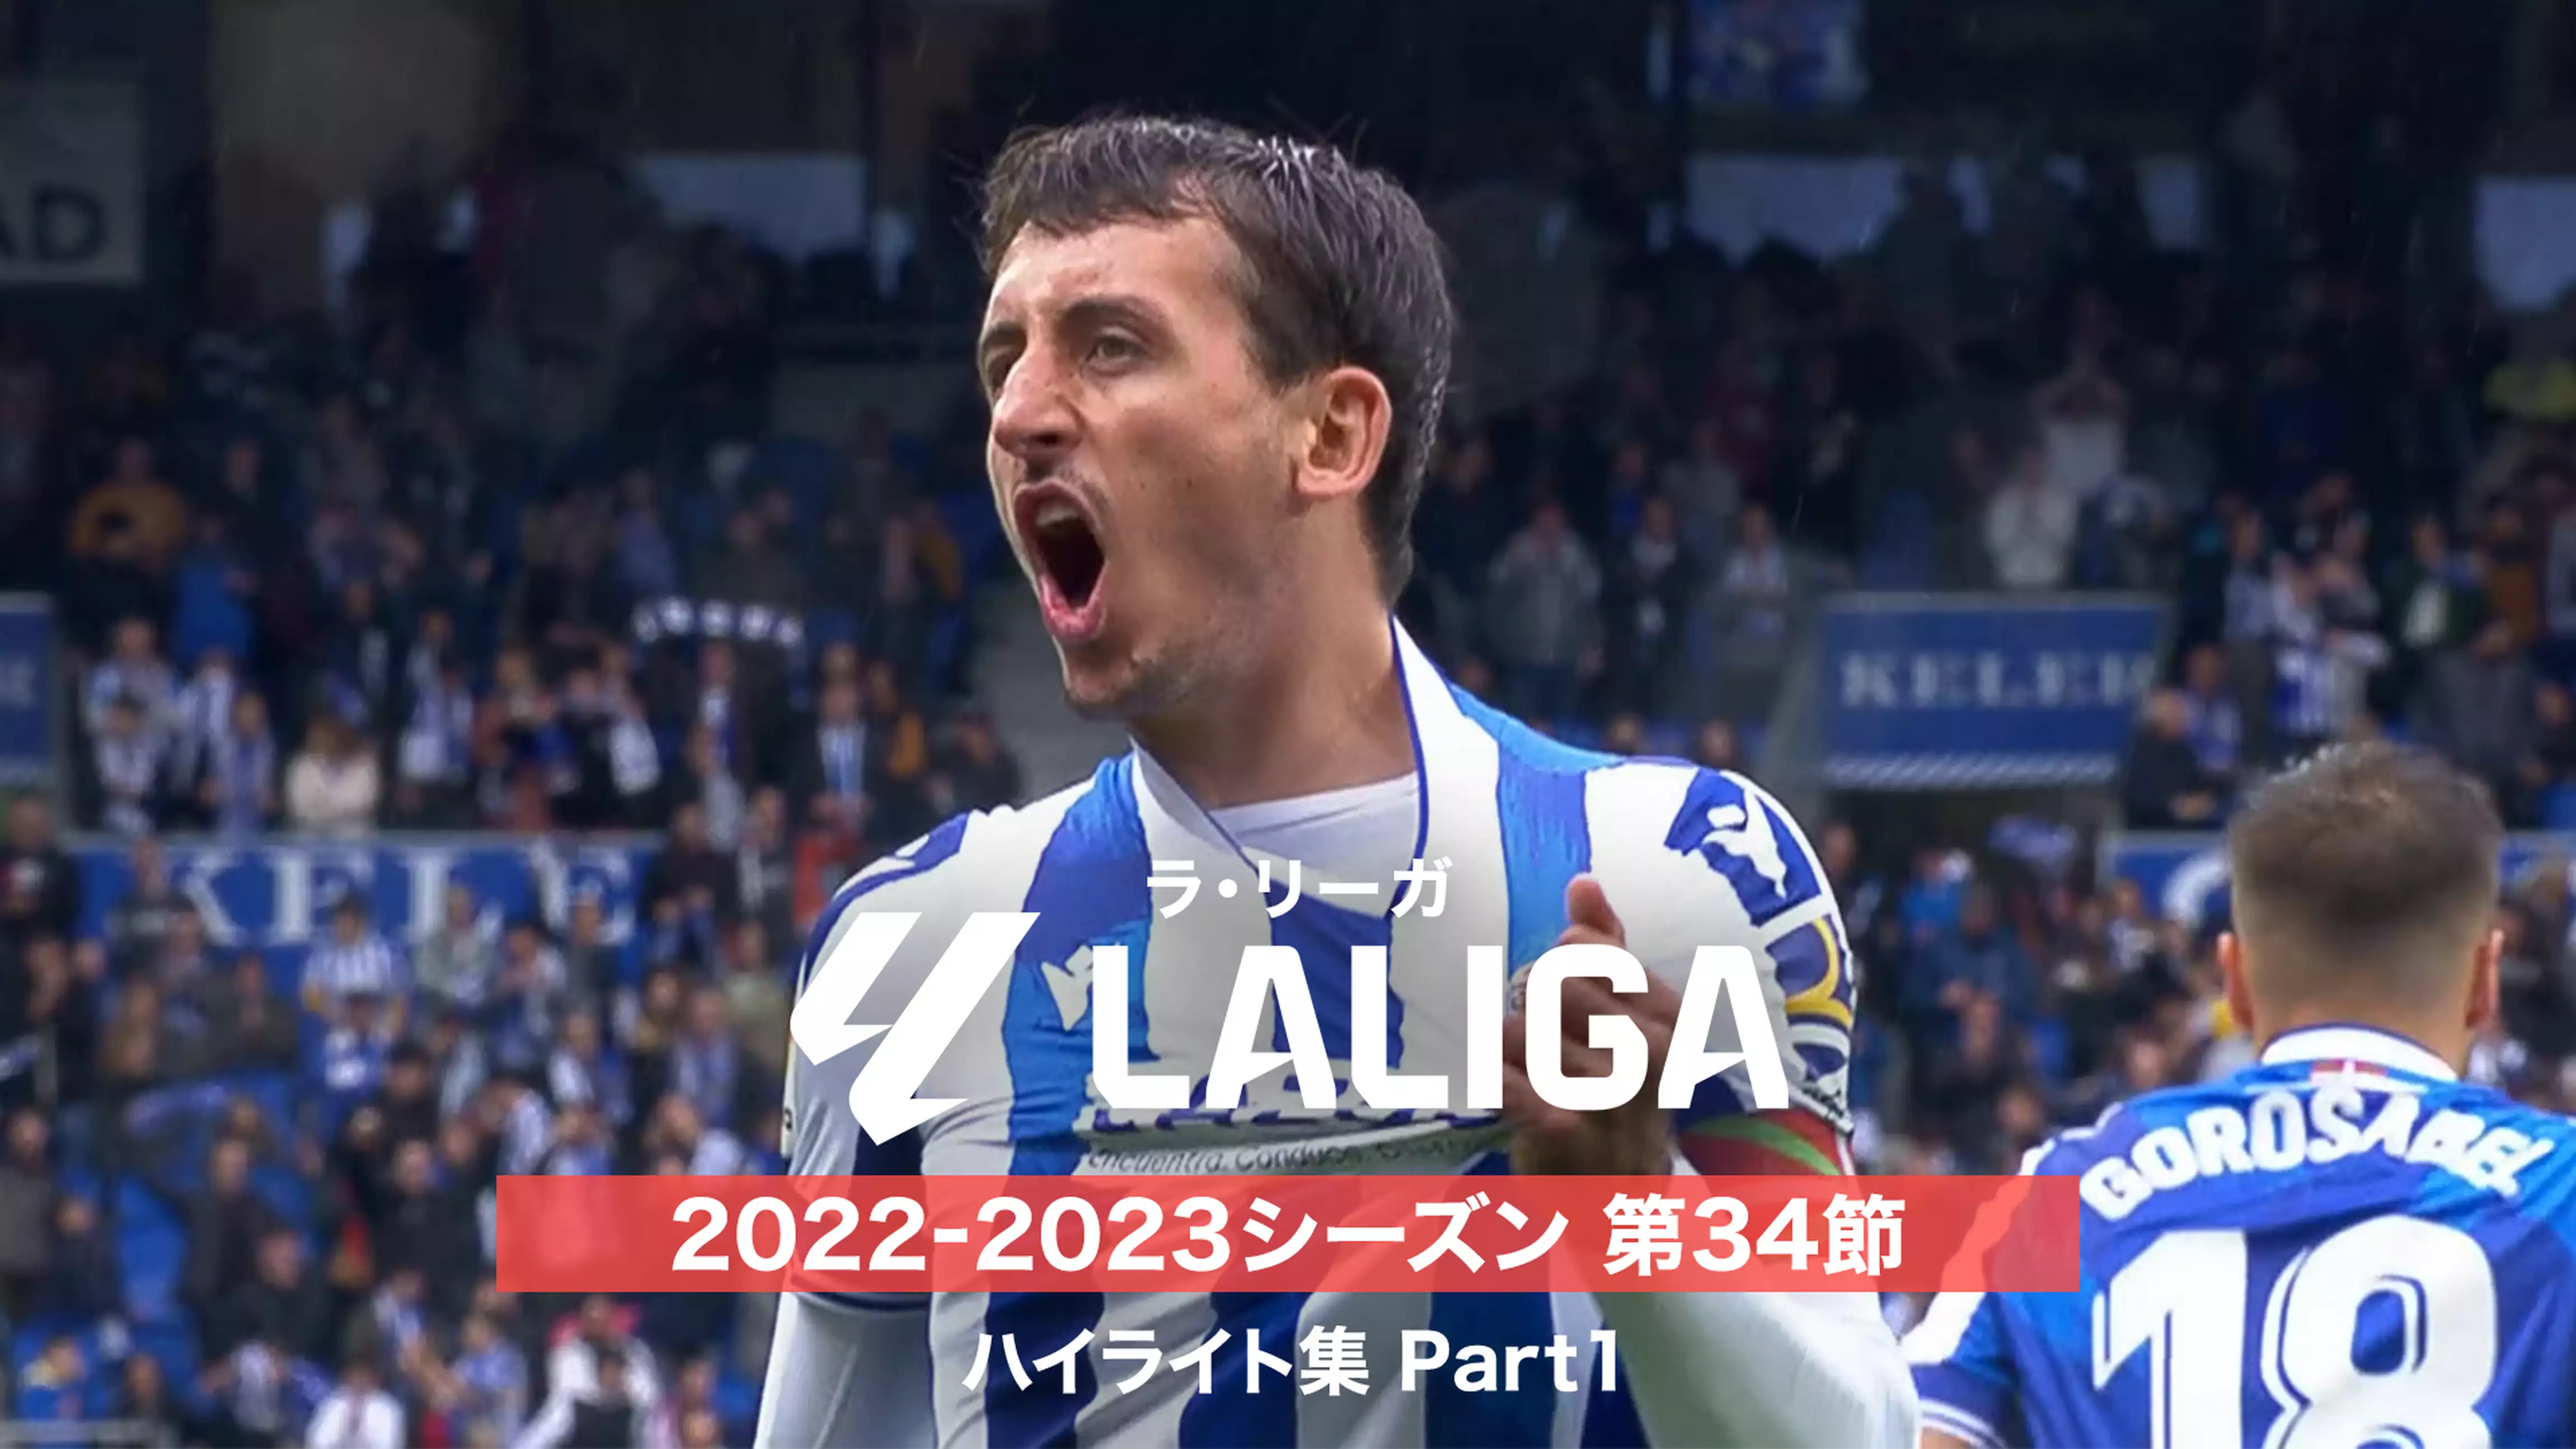 ラ・リーガ 2022-2023シーズン 第34節 ハイライト集 Part1